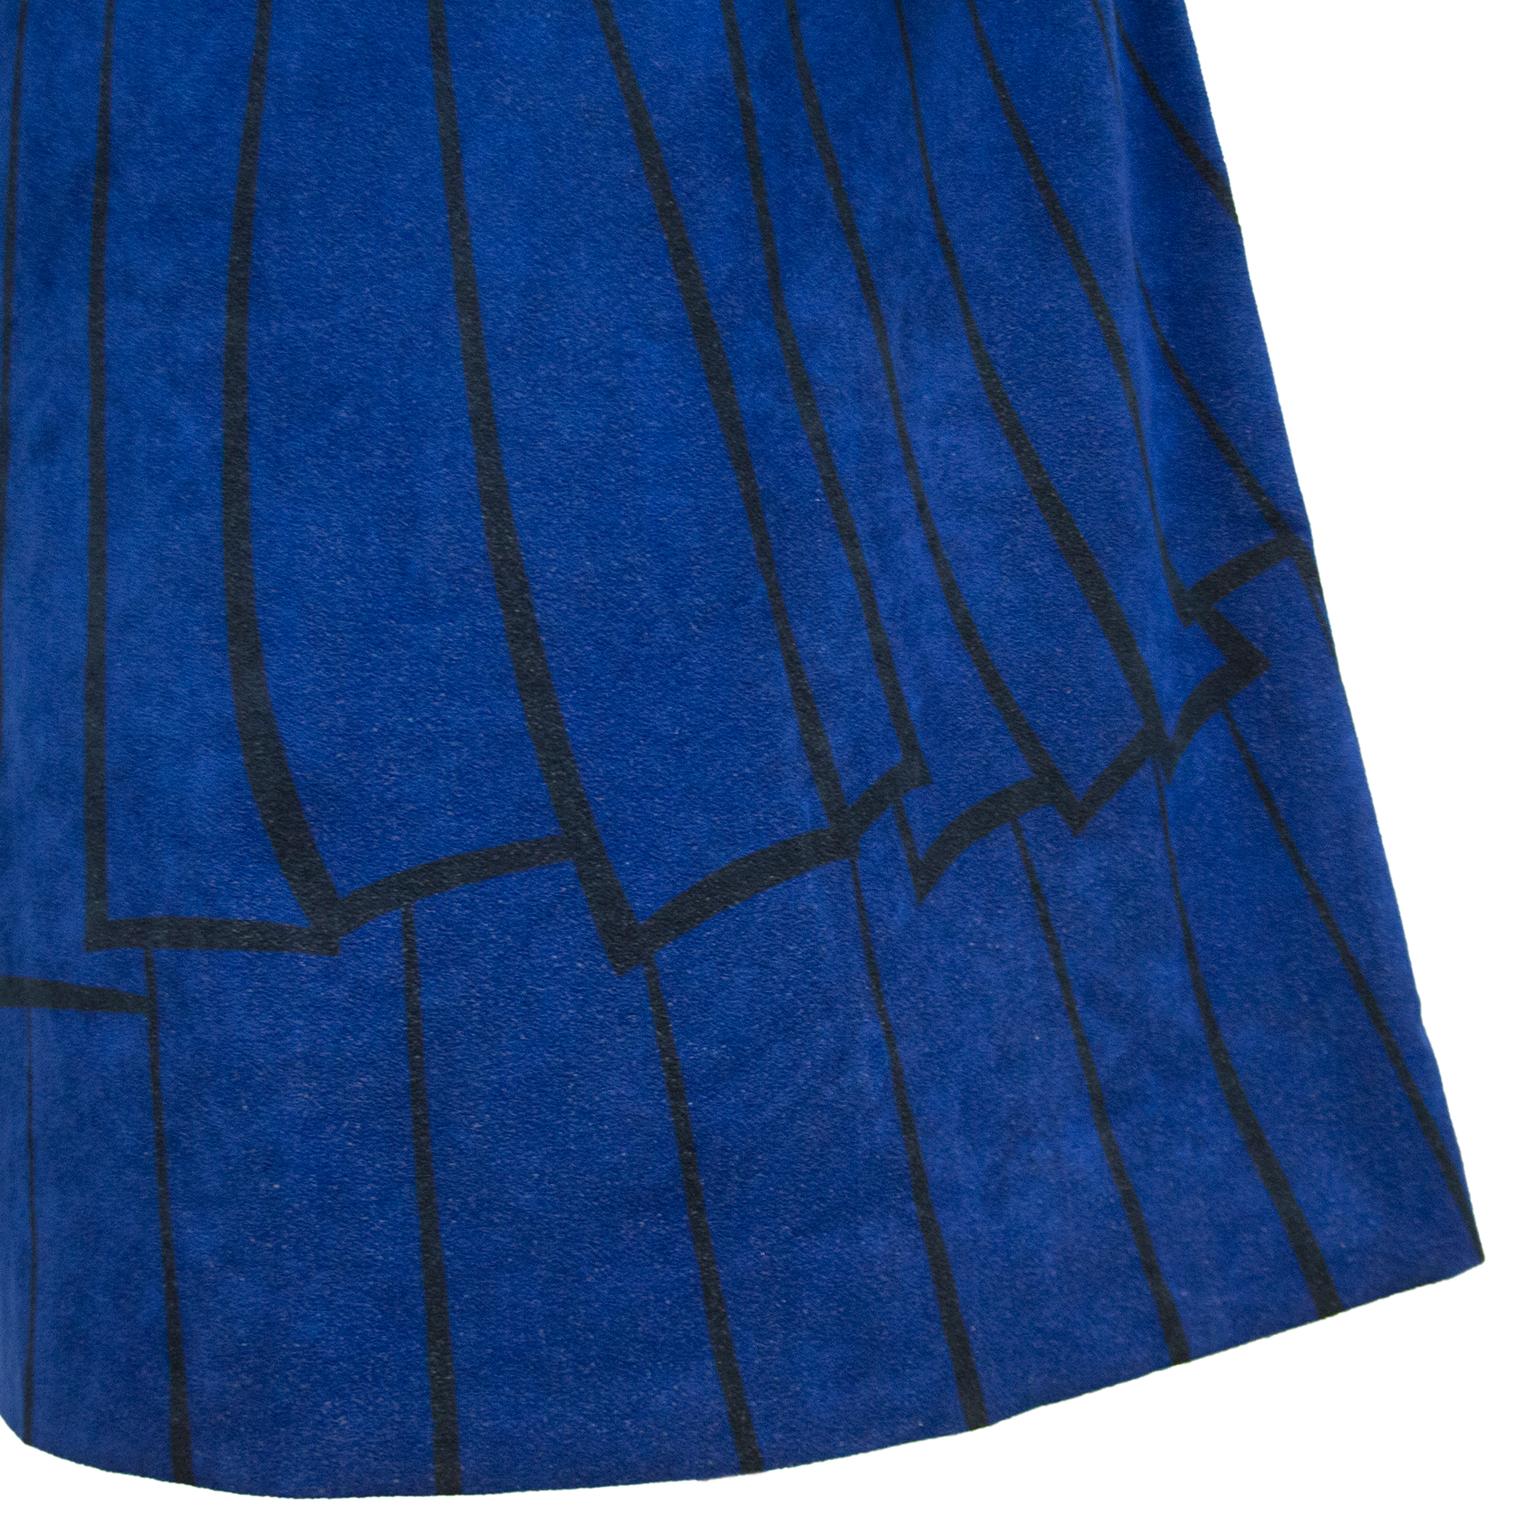 1960s Roberta di Camerino Trompe L'oeil Ultrasuede Dress For Sale 1